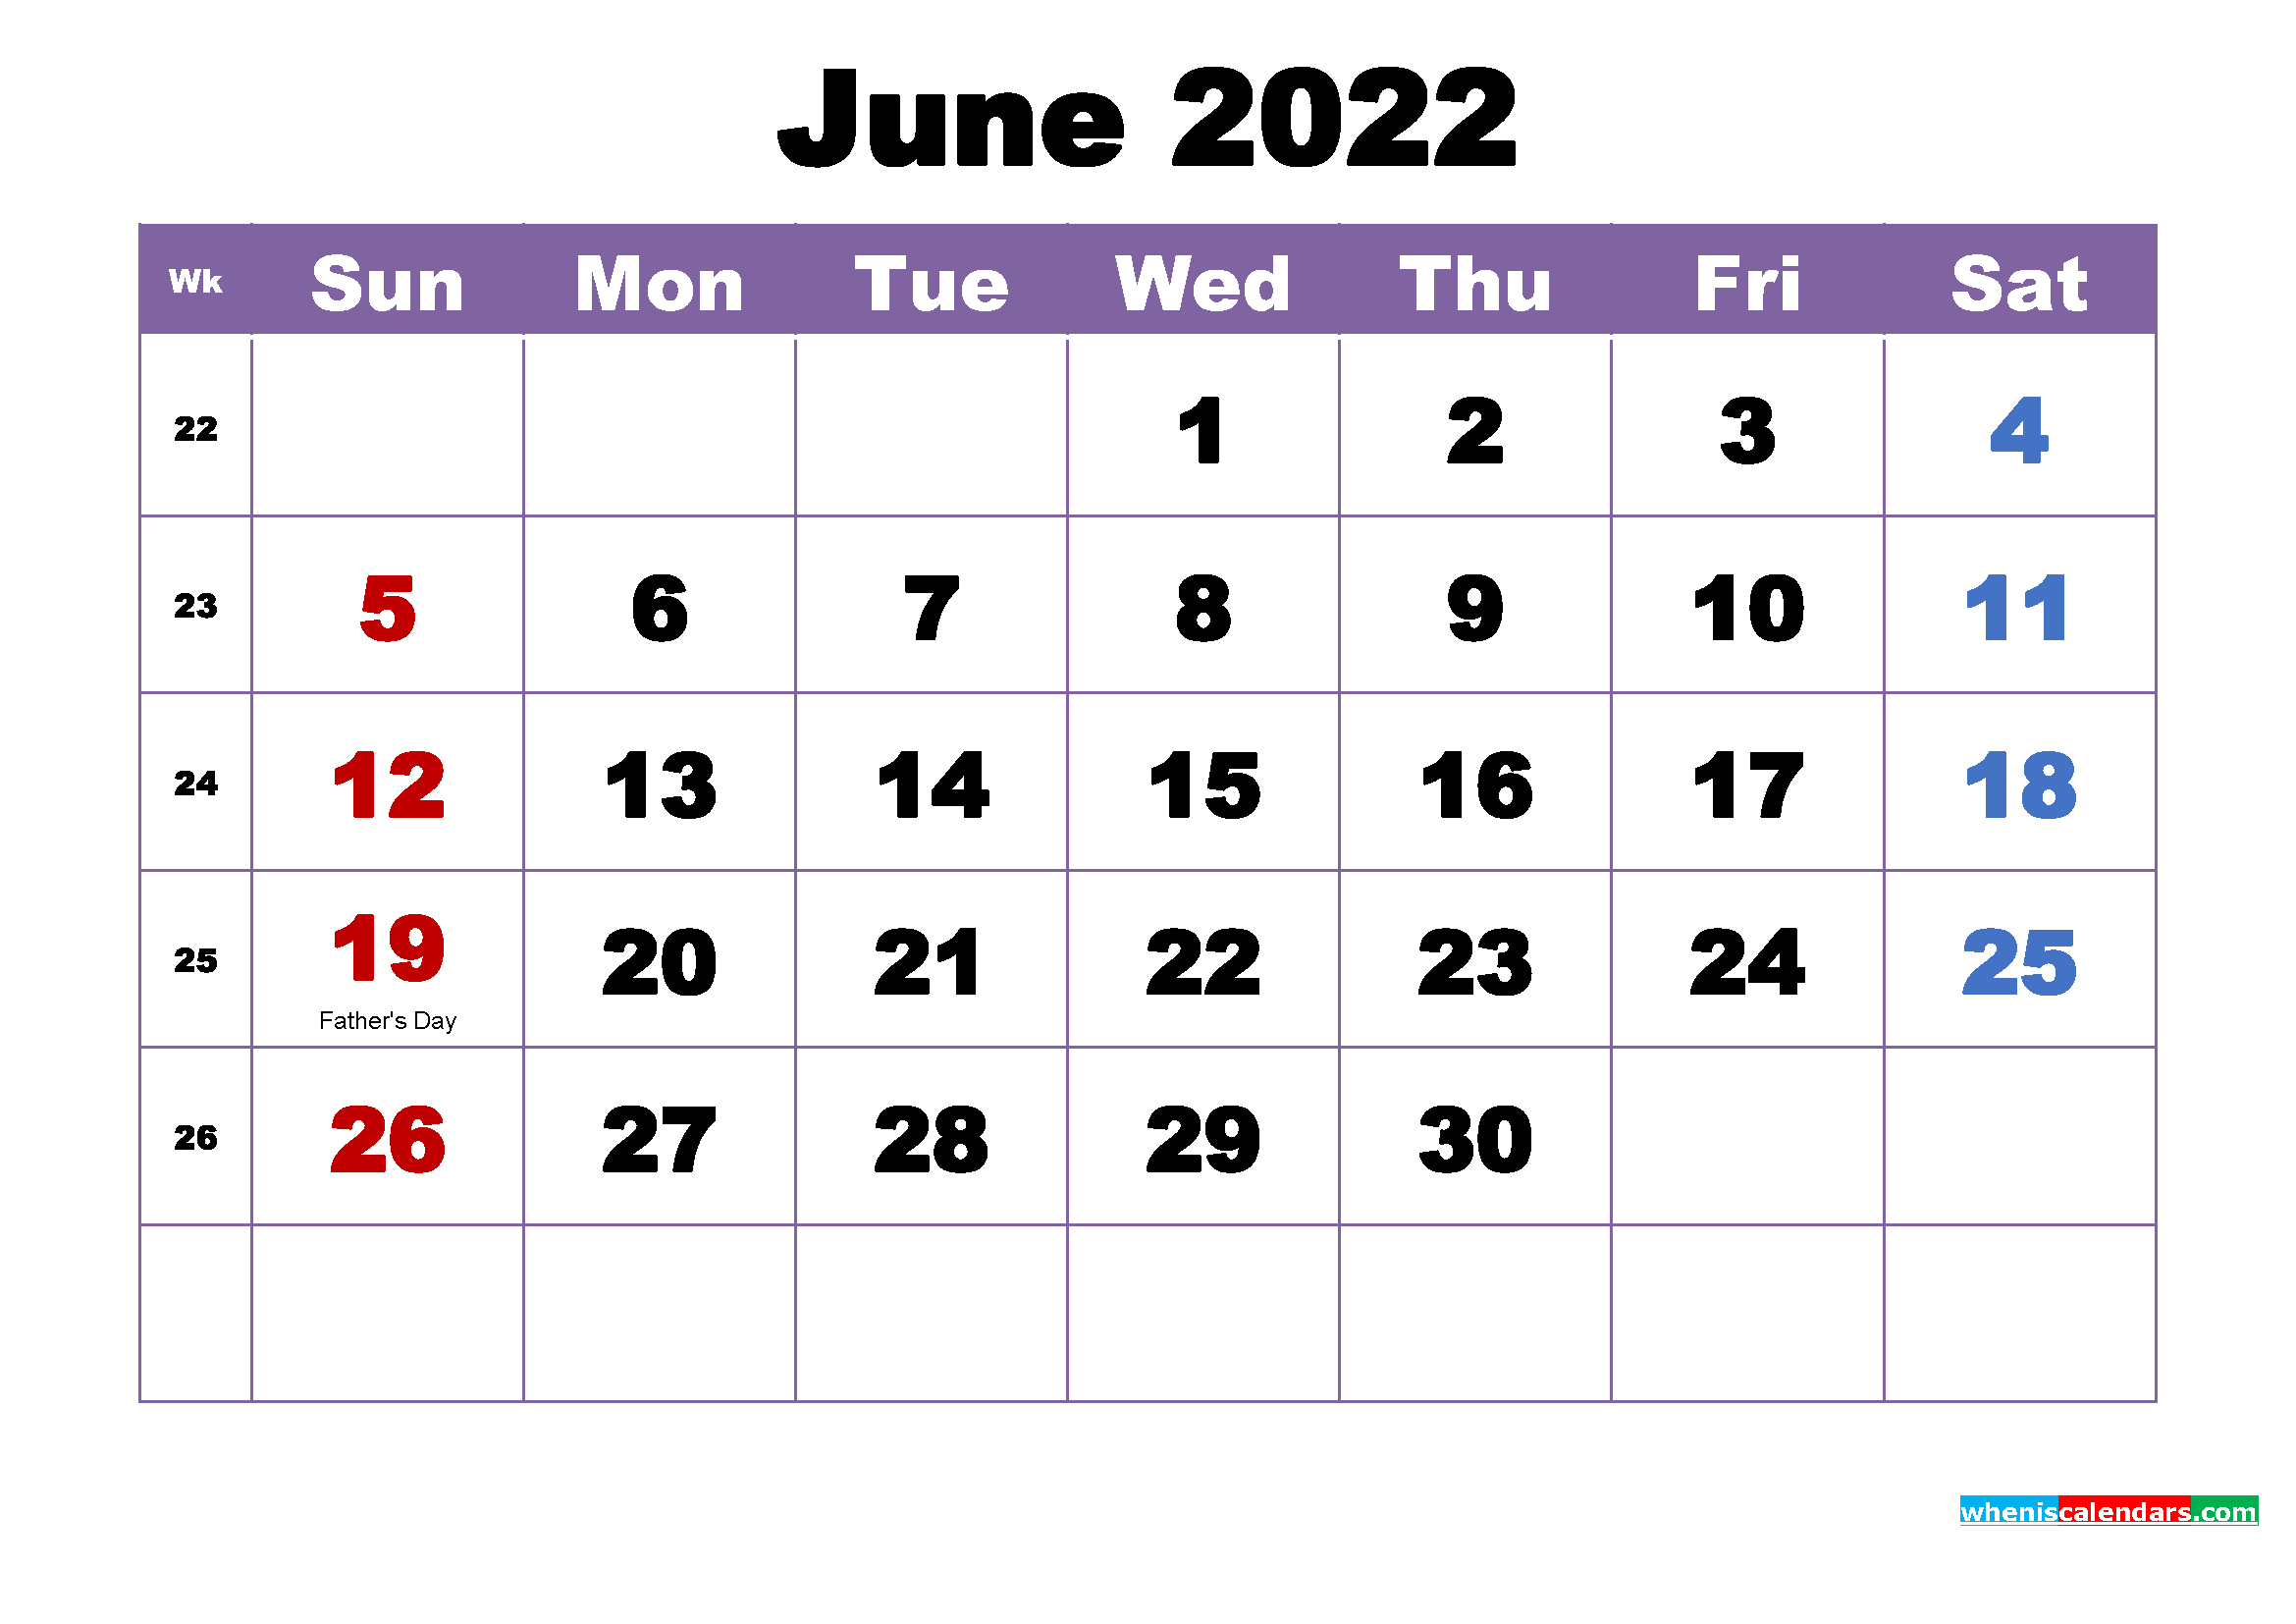 Catch June 2022 Calendar Pdf